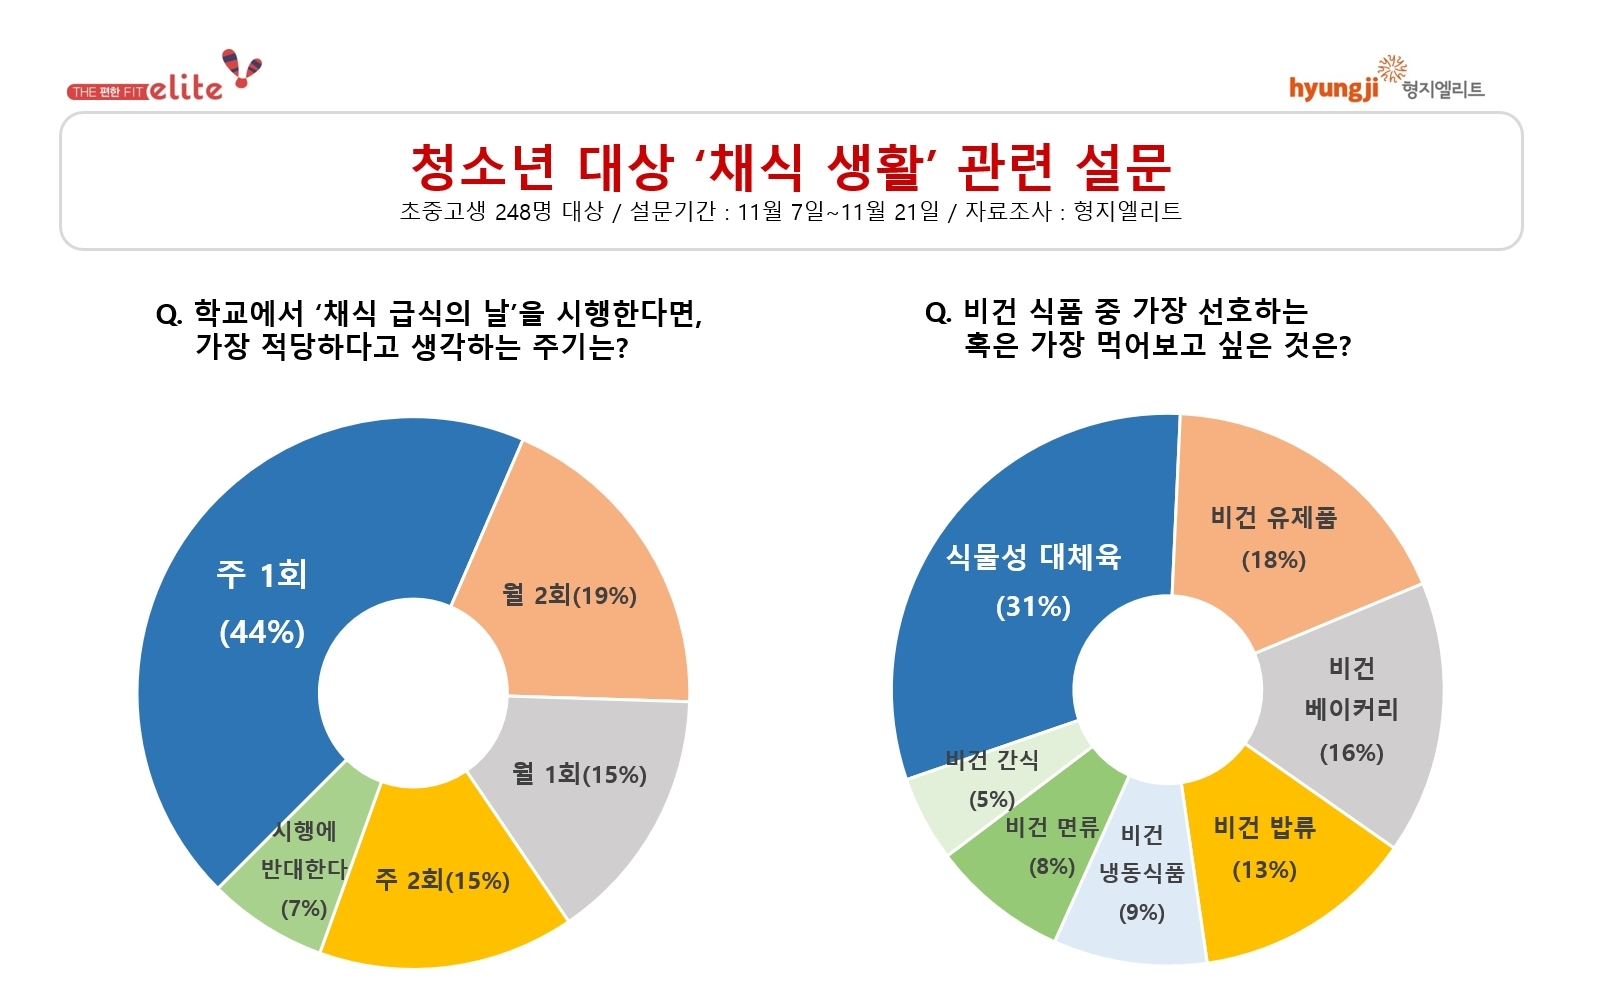 [생활경제 이슈] 가장맛있는족발, 한국 vs 포루투갈응원 이벤트 진행 外